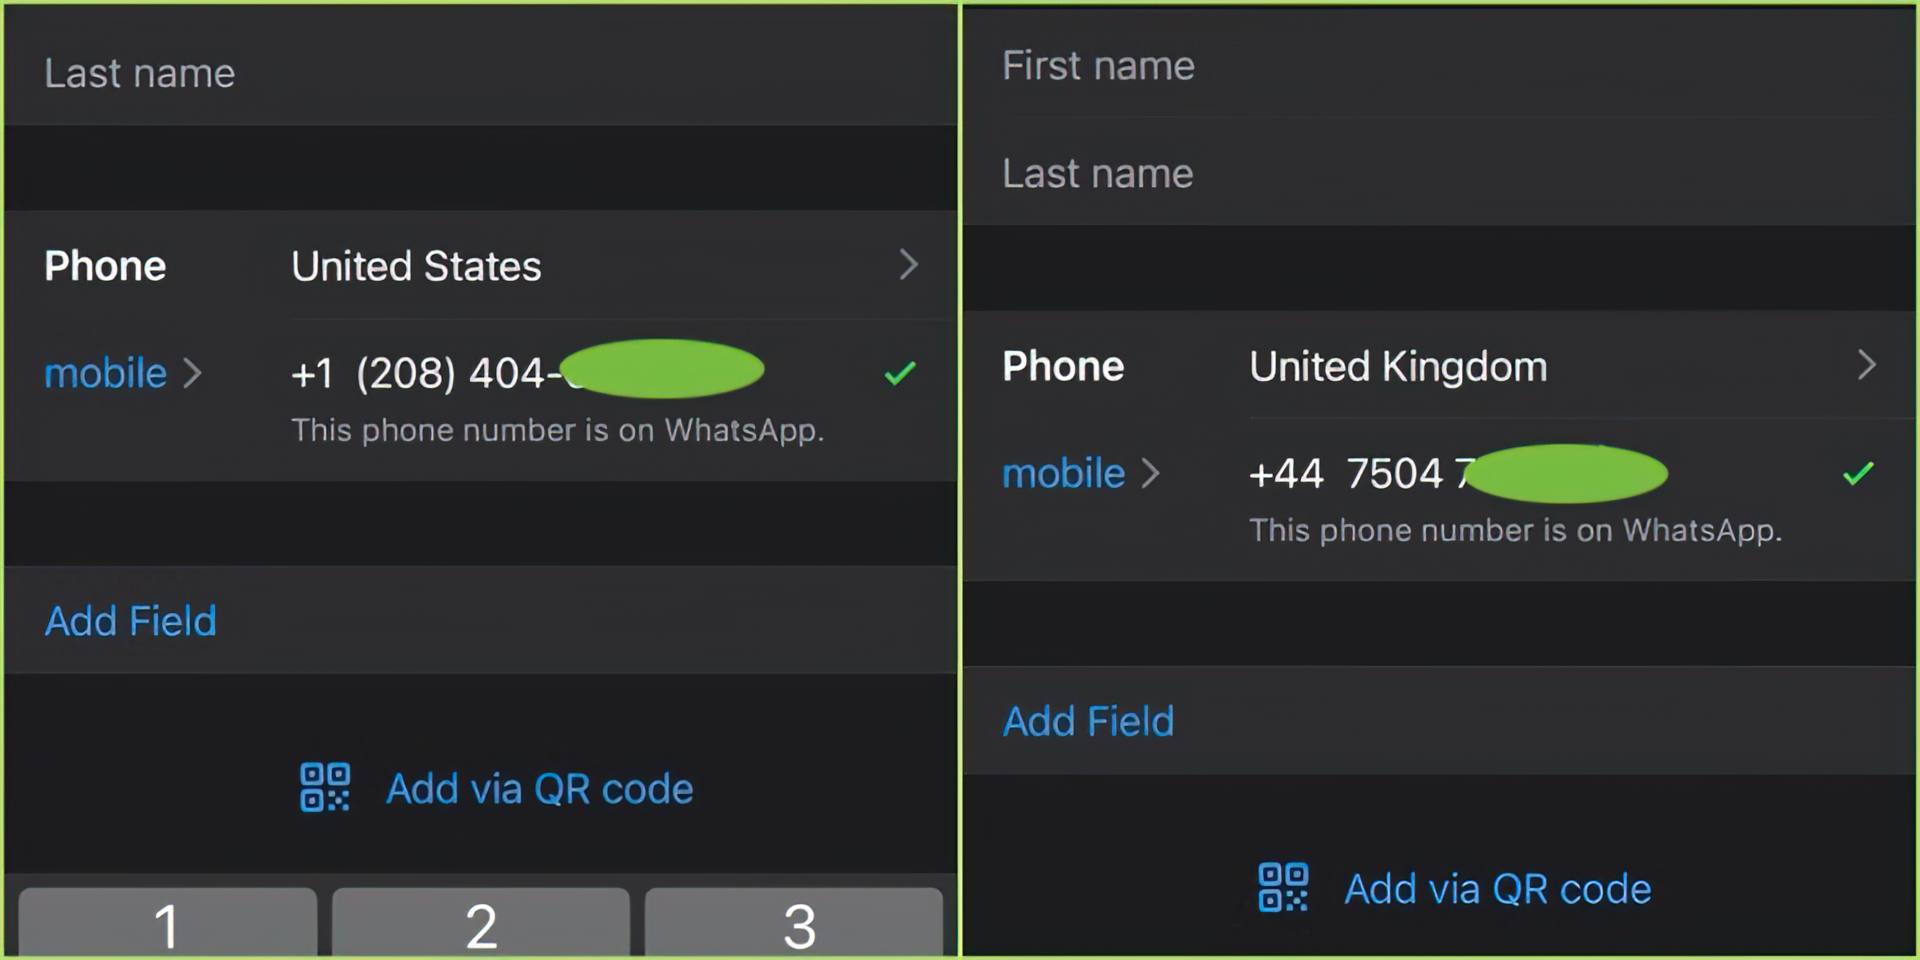 Fuite de données WhatsApp sur le dark web 500 millions d'utilisateurs touchés